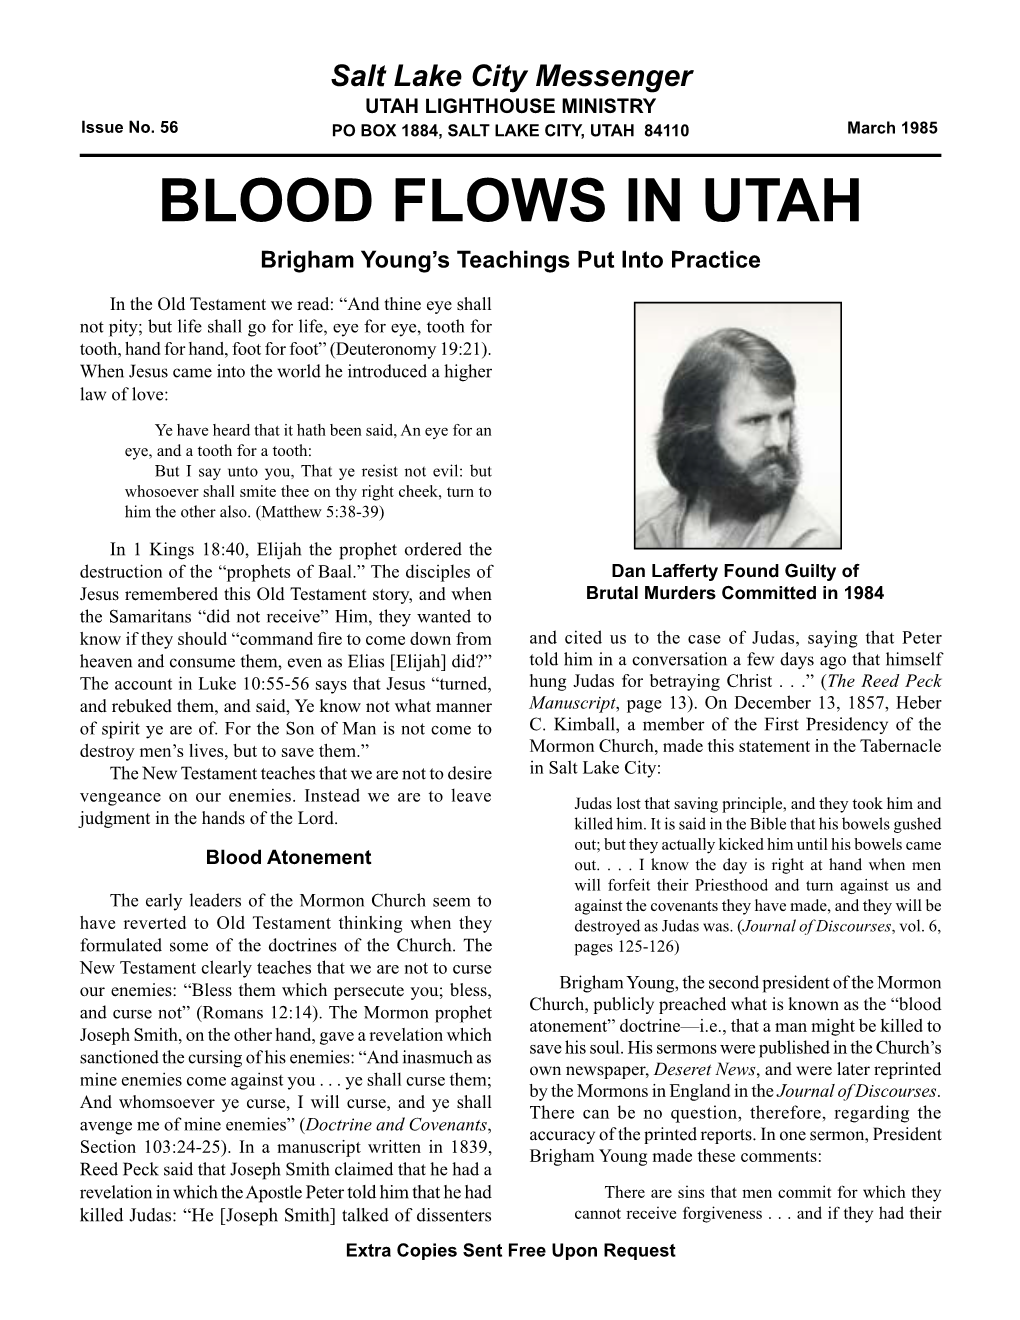 56 Salt Lake City Messenger: Blood Flows in Utah